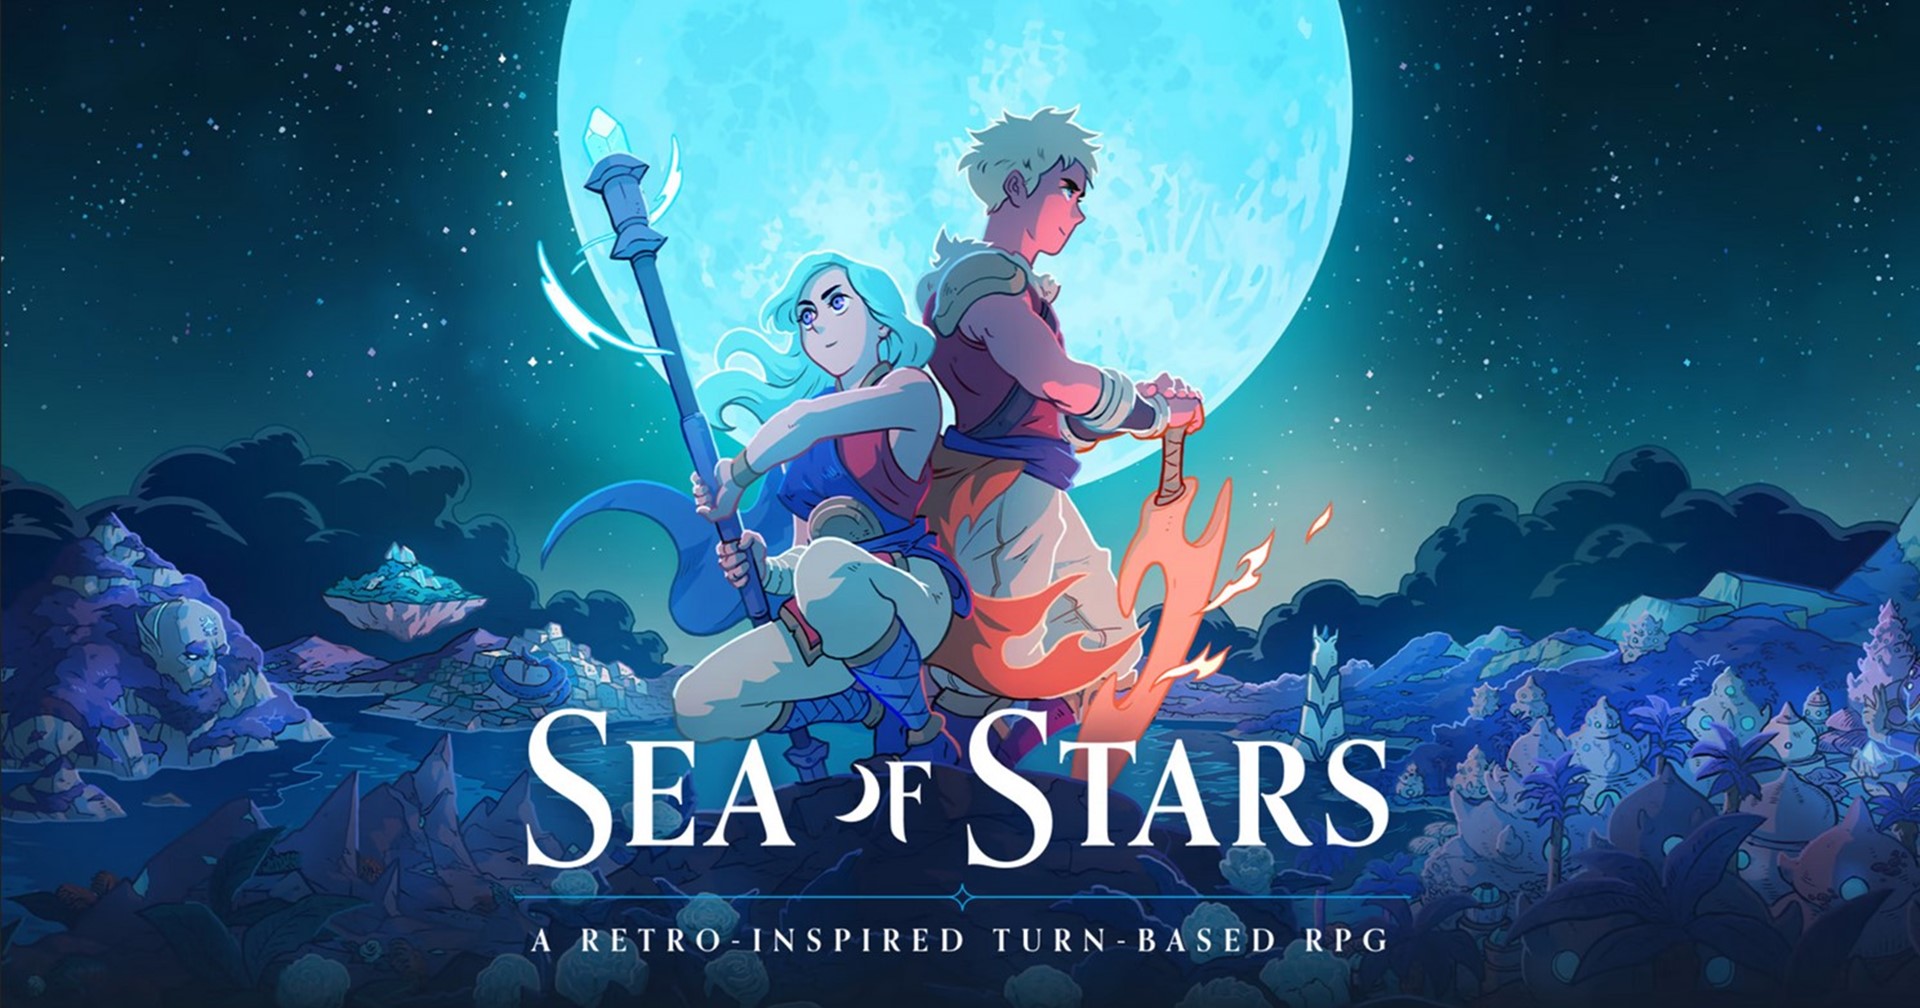 [แนะนำเกม] Sea of Stars (เดโม) ยำรวมตำนาน RPG ในเกมเดียว